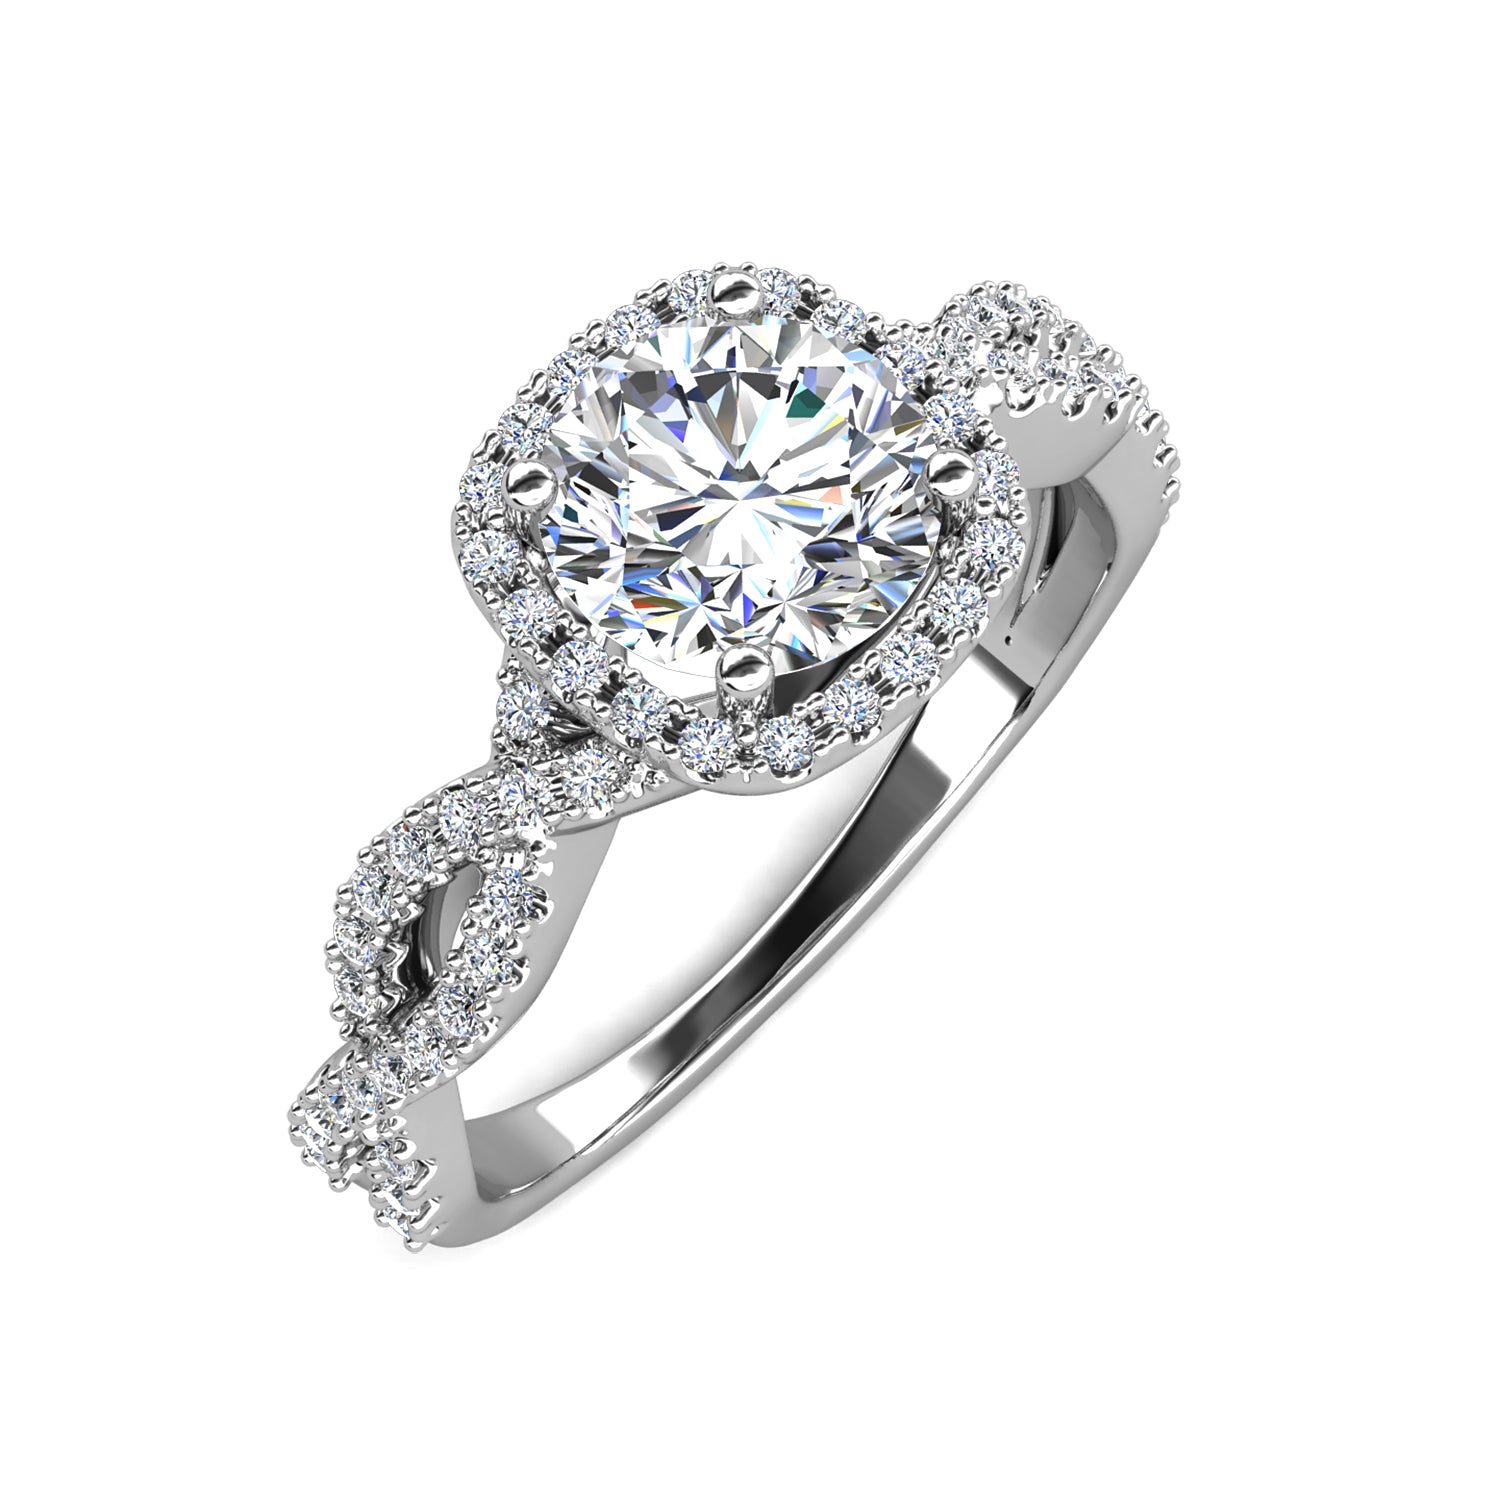 Ring Inaya von Juwelenstore: Von oben betrachtet, glanzvolles Symbol zeitloser Qualität mit echtem zertifiziertem Moissanit-Diamanten. Ein Juwel der Extraklasse